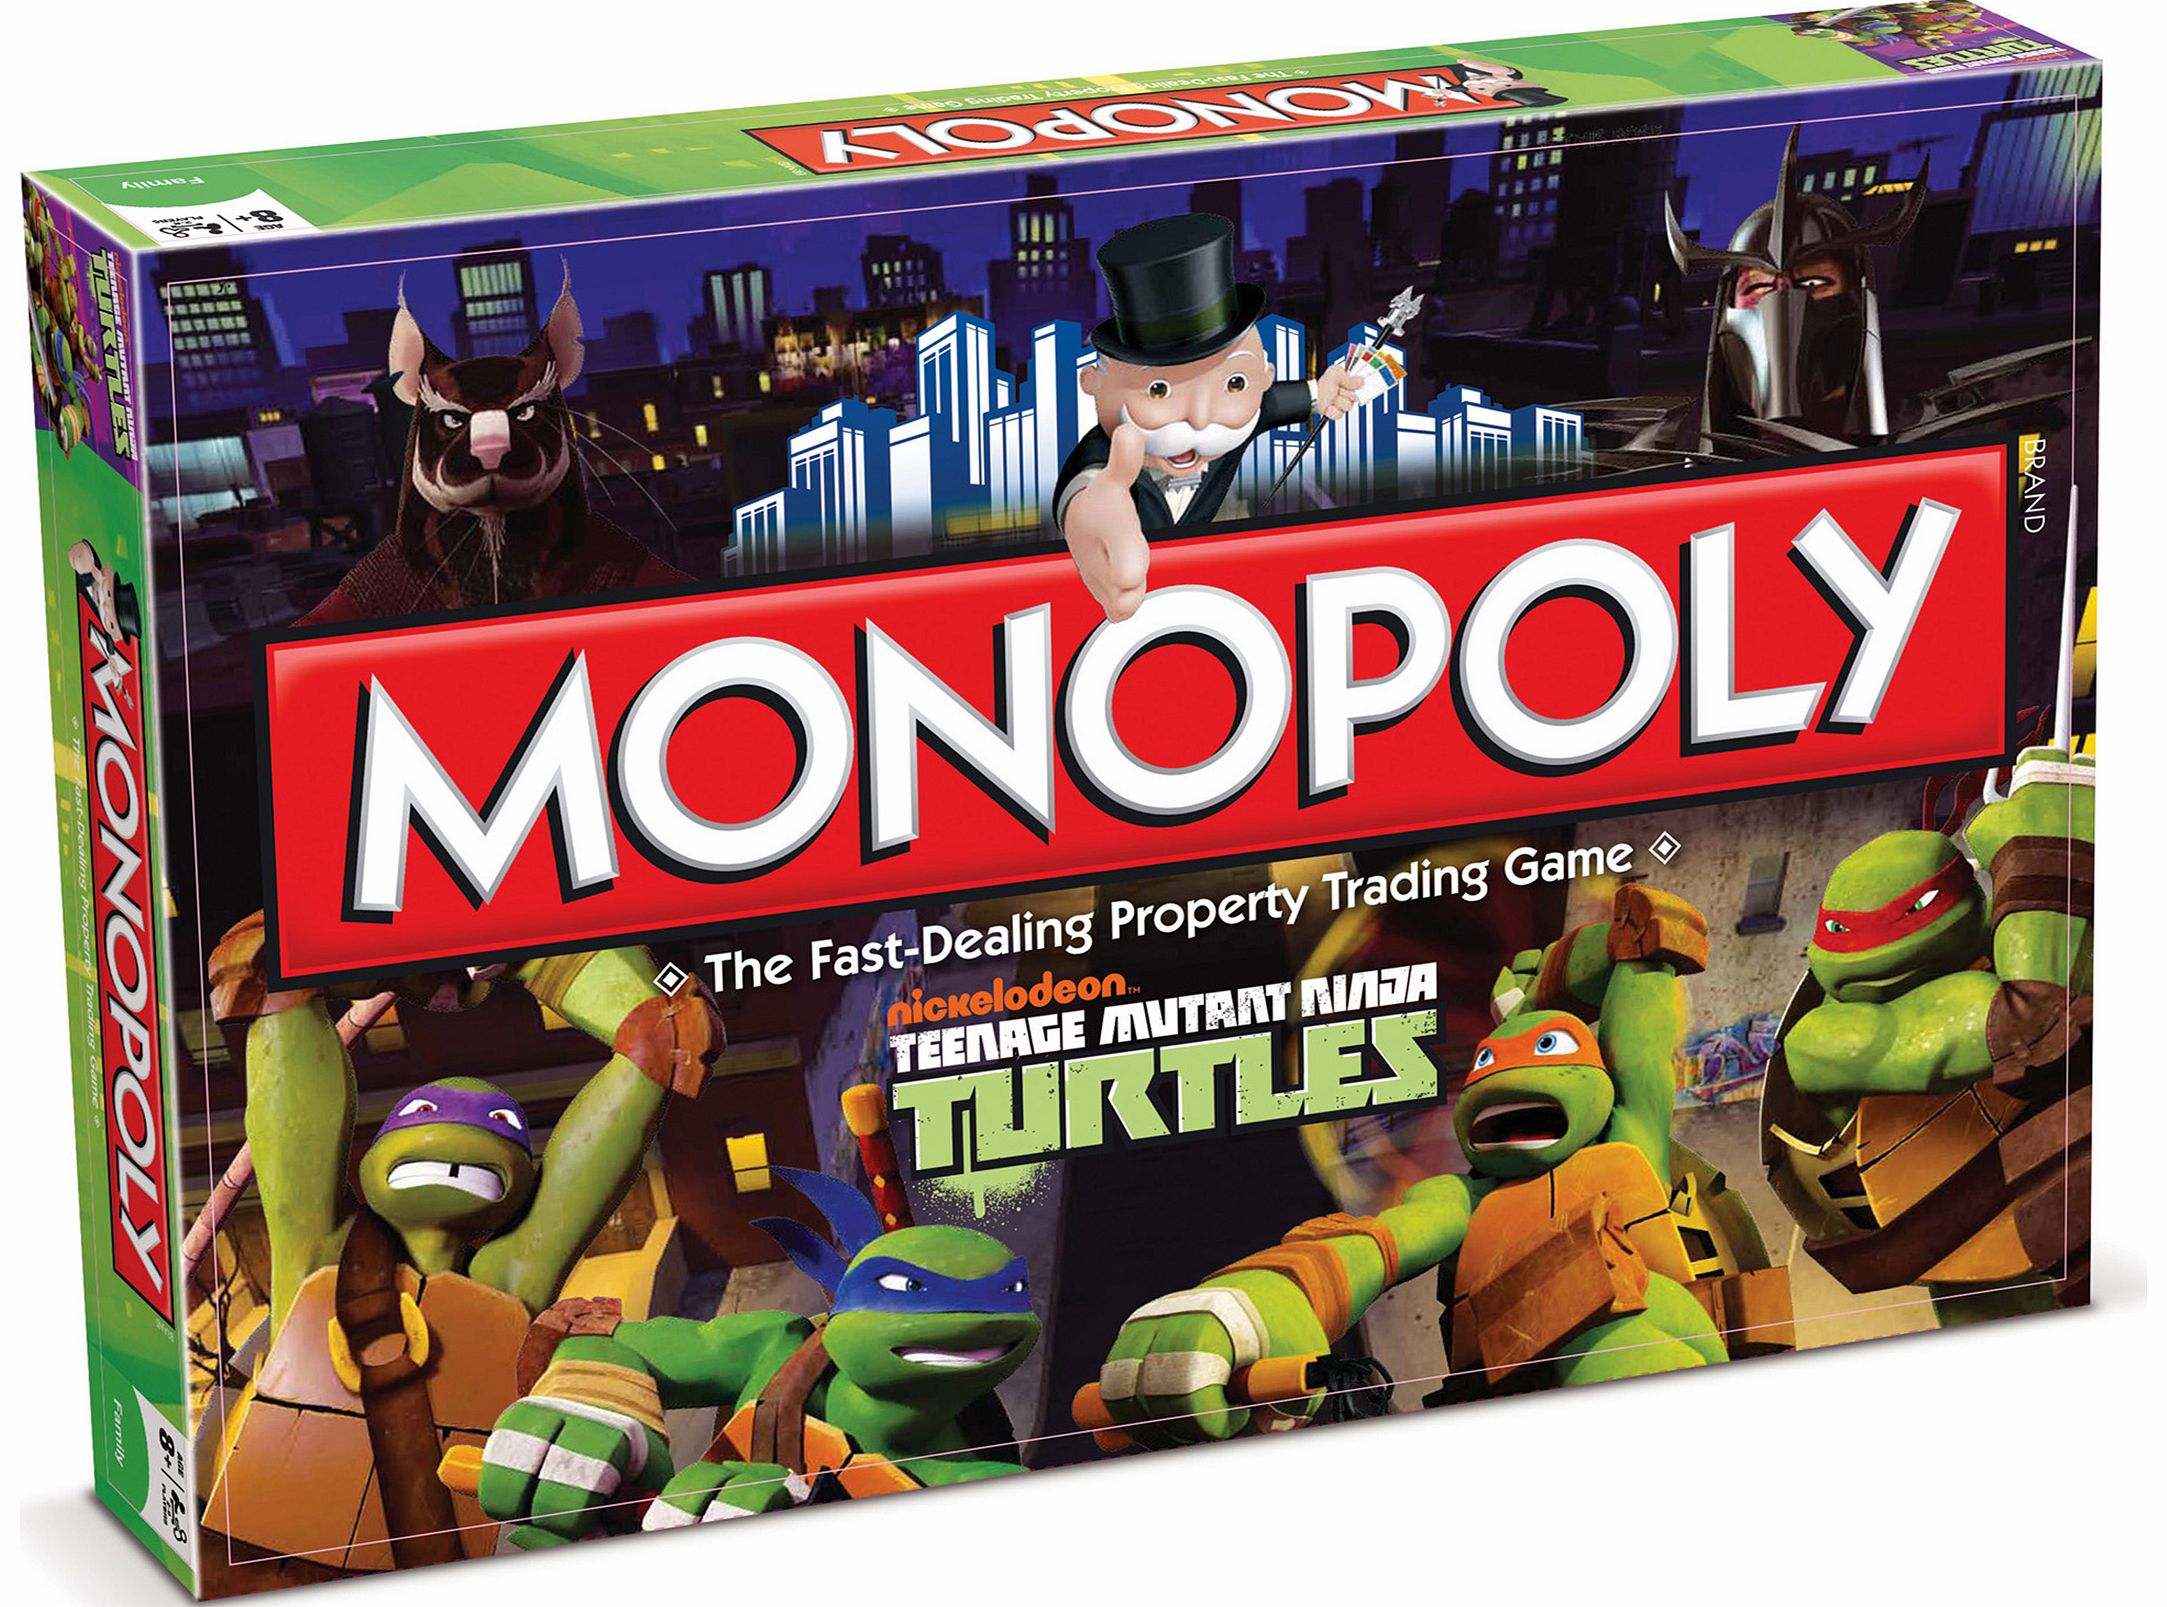 Teenage Mutant Ninja Turtles Monopoly